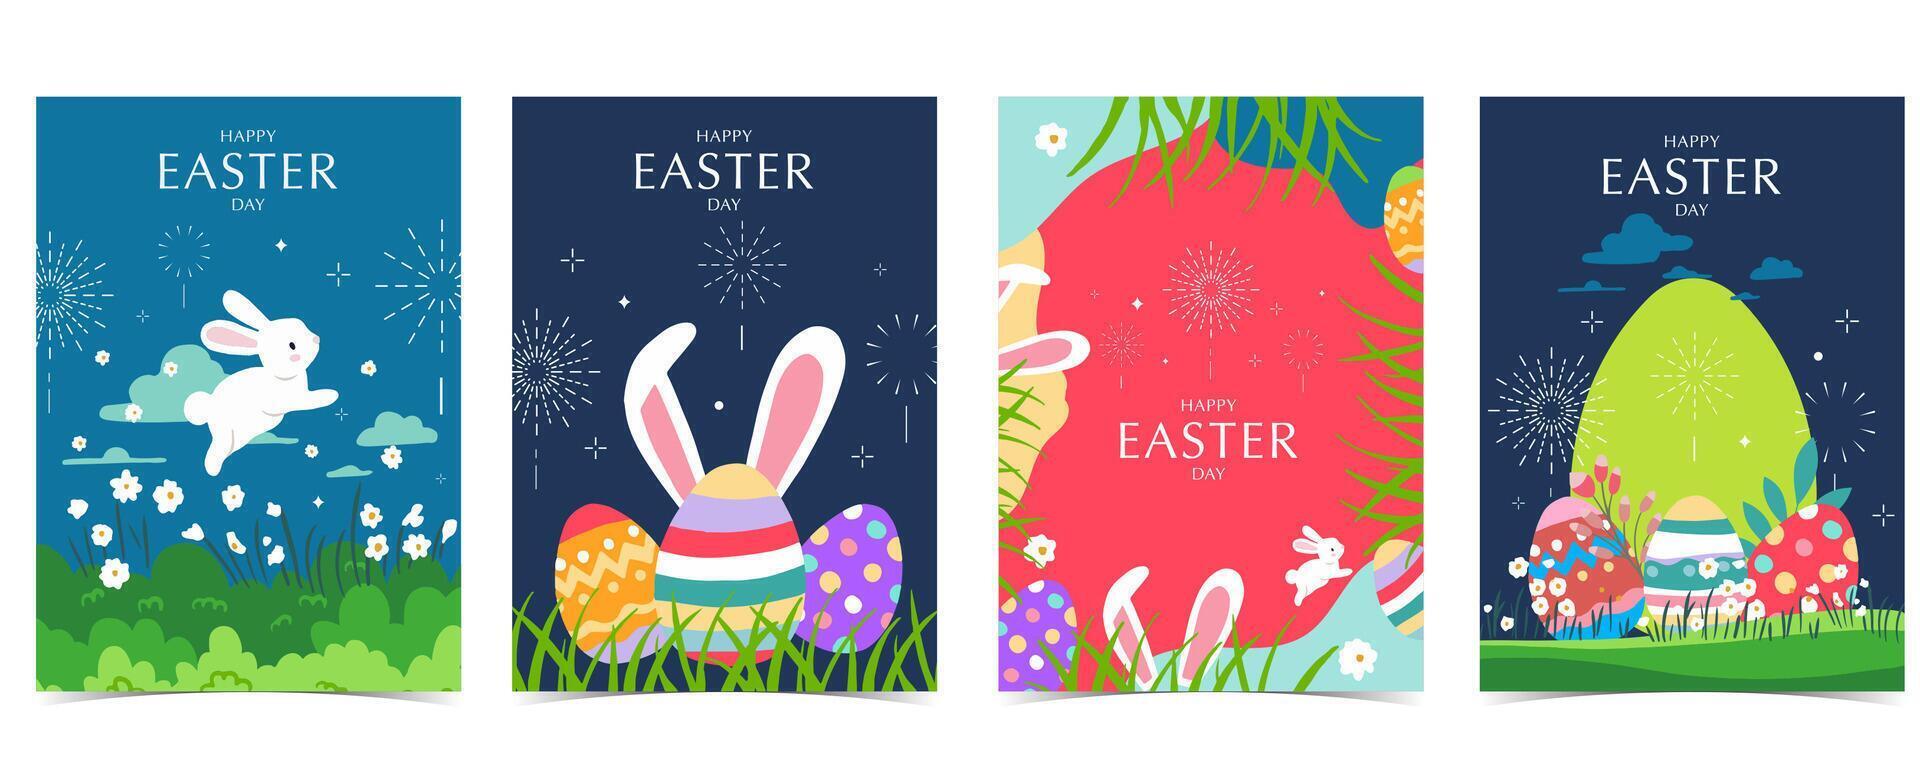 collection de Pâques Contexte ensemble avec lapin et Oeuf dans jardin modifiable vecteur illustration pour a4 verticale carte postale